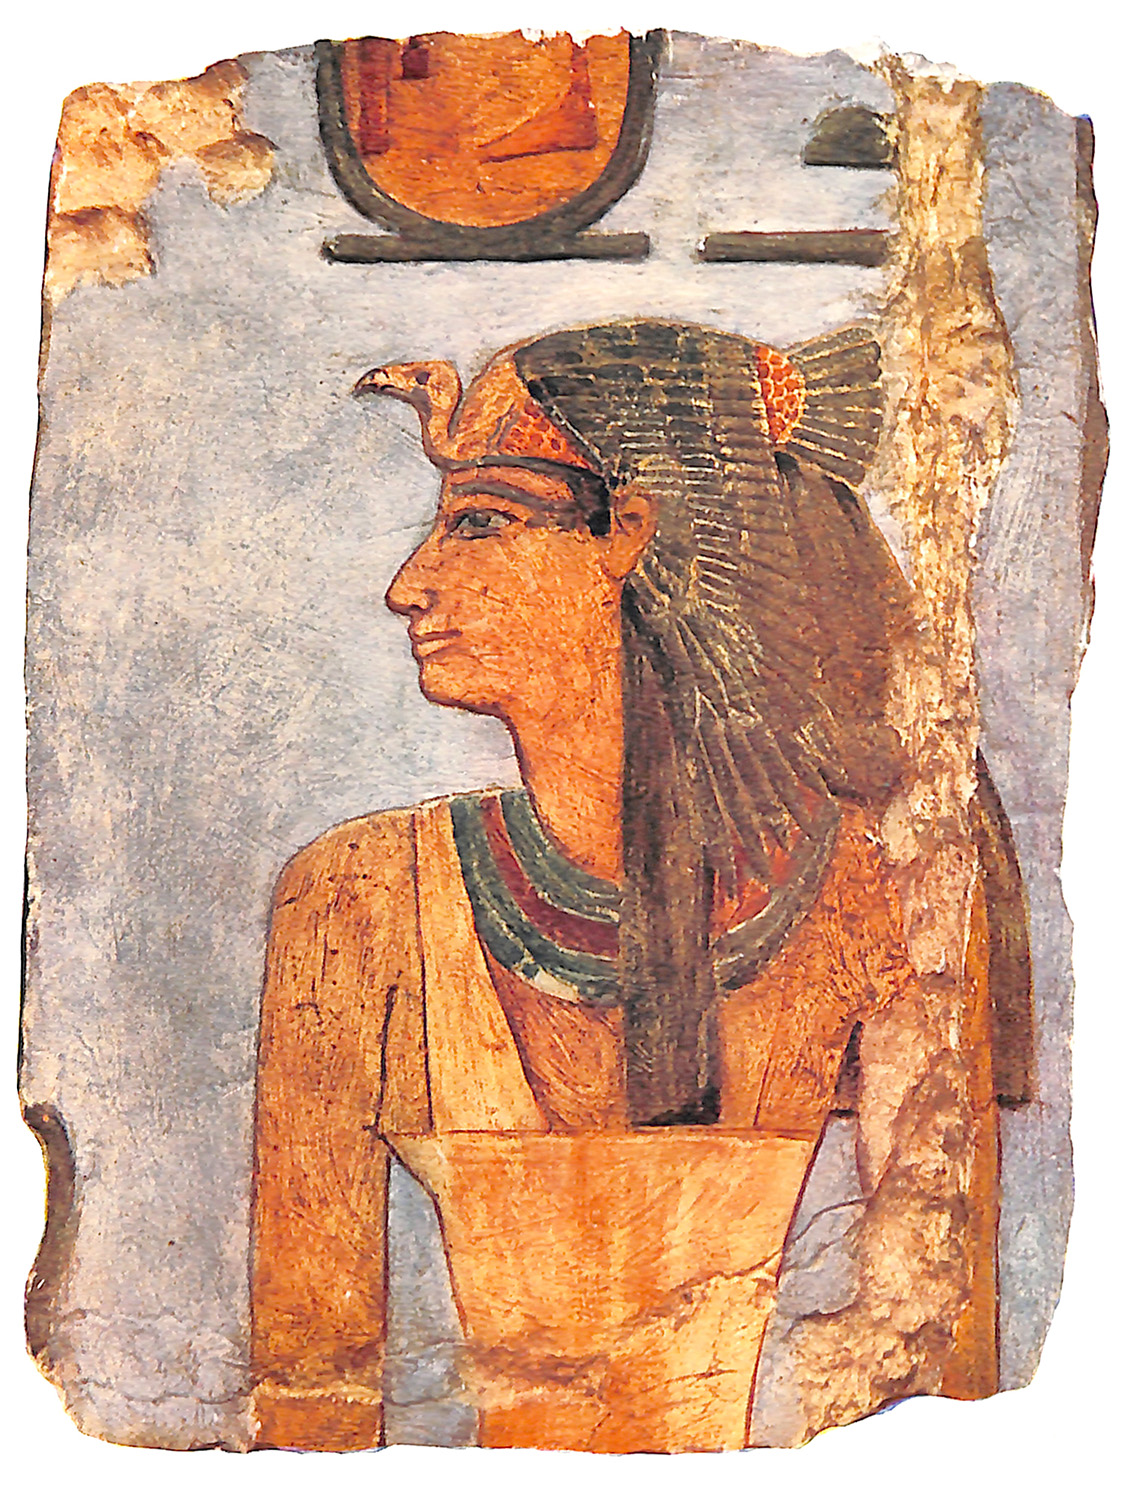 Senseneb, In The Temple Of Hatshepsu At Der El-Bahri